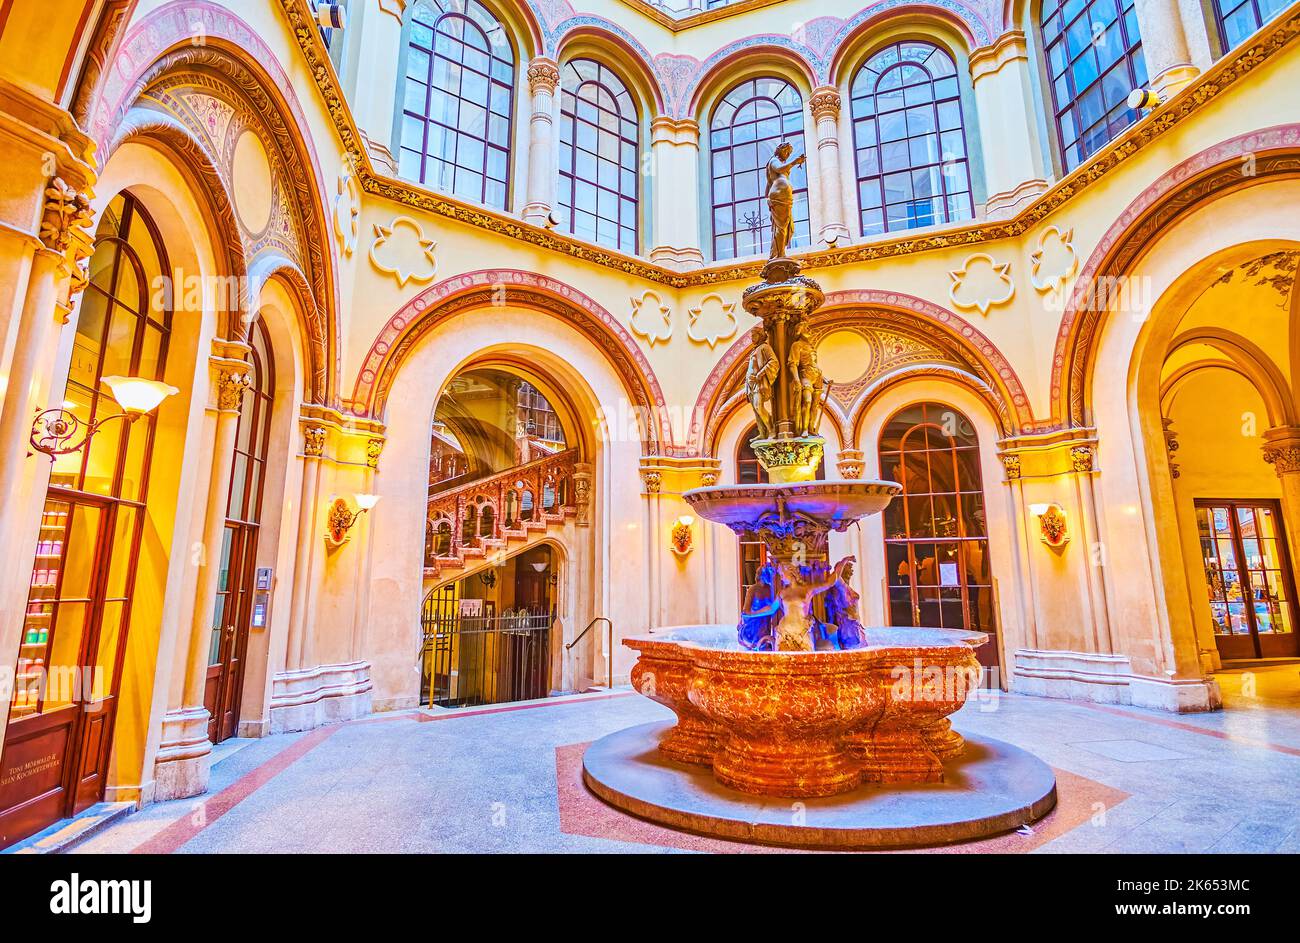 VIENNE, AUTRICHE - 17 FÉVRIER 2019 : Fontaine de la sirène du Danube dans la petite cour couverte du Palais Ferstel, sur 17 février à Vienne, Autriche Banque D'Images